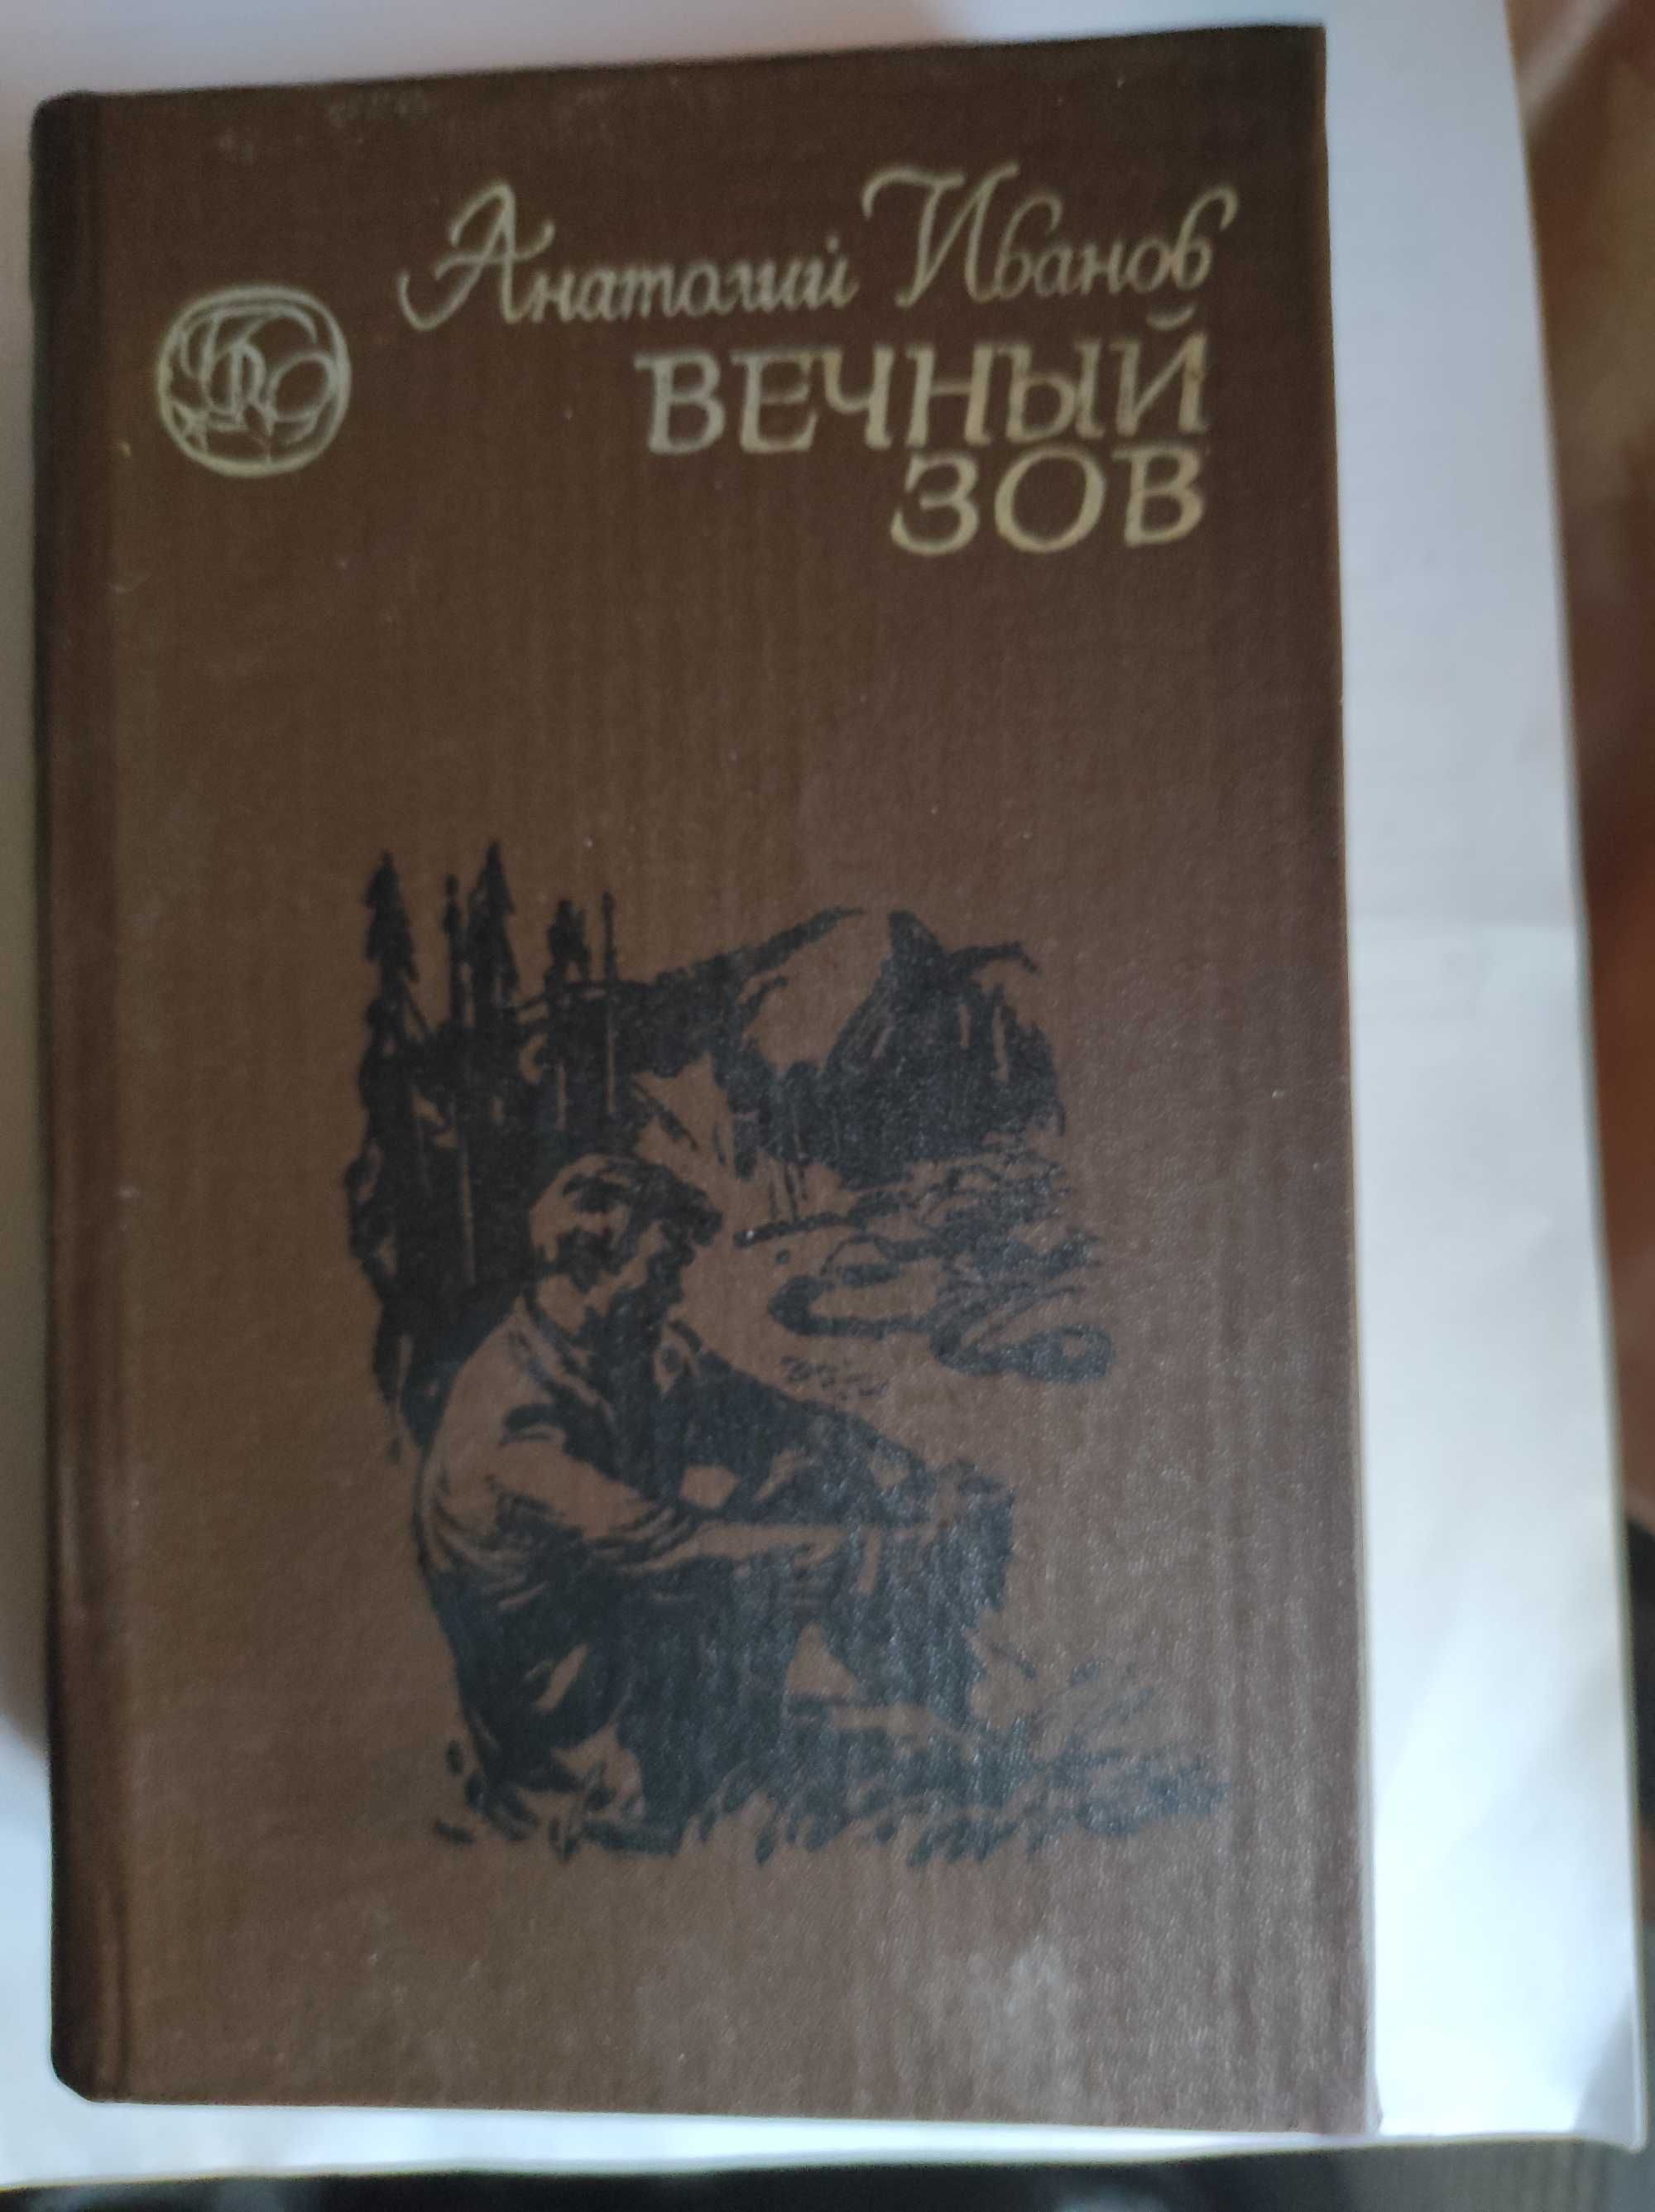 Анатолий Иванов Вечный зов Книга 2 тома 1982